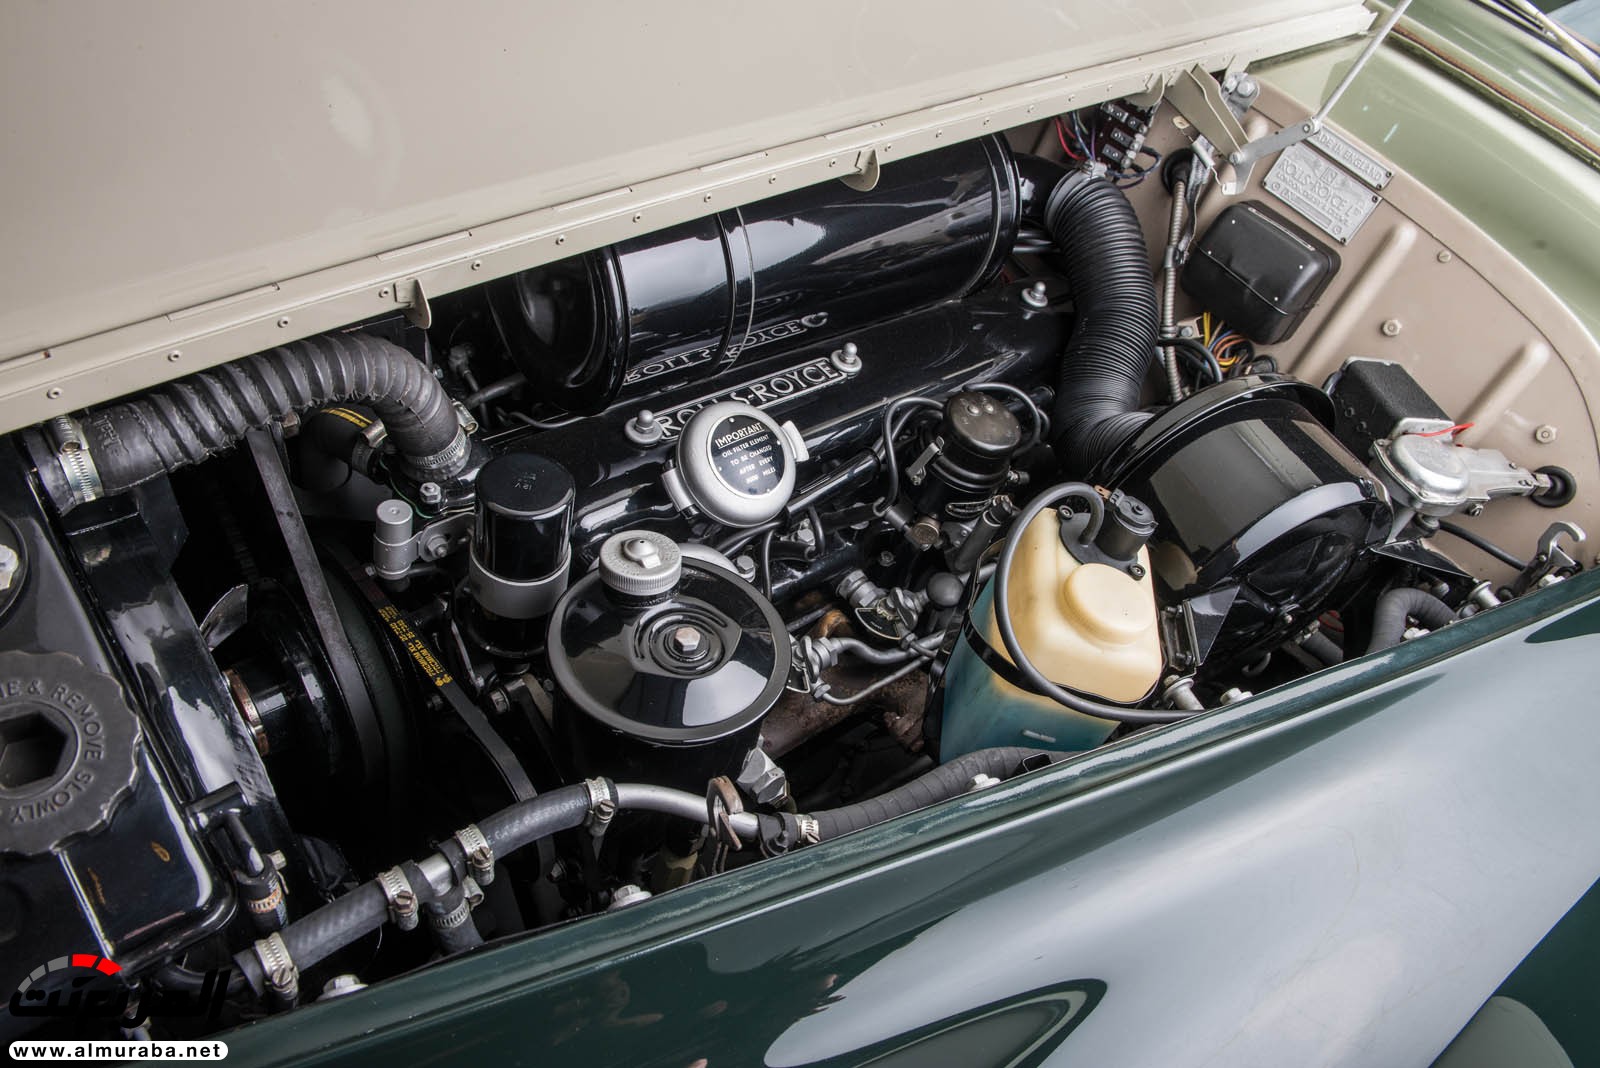 "رولز رويس" سيلفر كلاود 1959 ذات هيكلة الواجن تتوجه لتباع في مزاد عالمي Rolls-Royce Silver Cloud 89